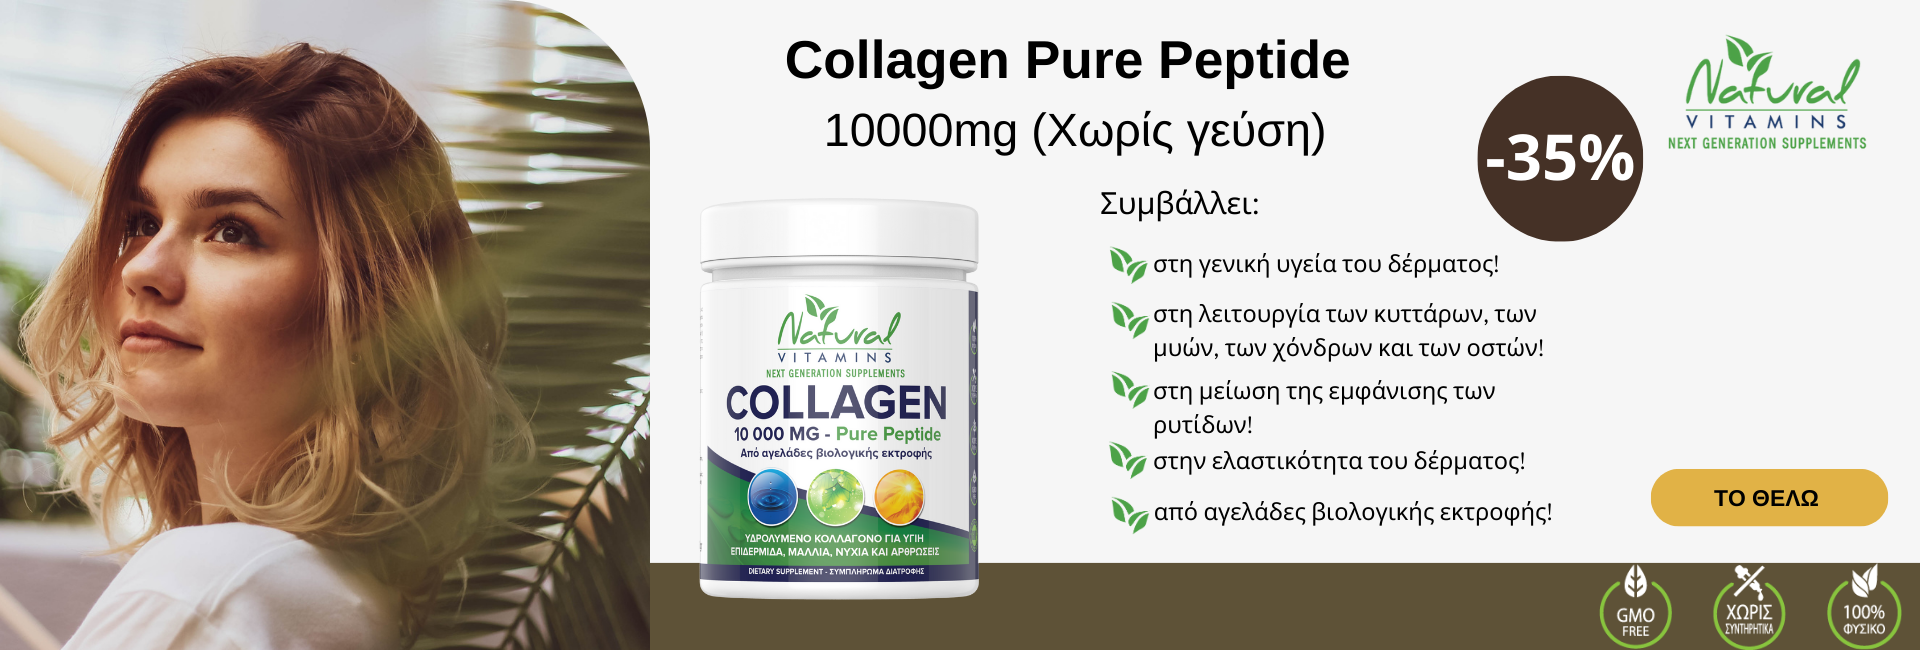 Collagen Pure Peptide Natural Vitamin 10000mg